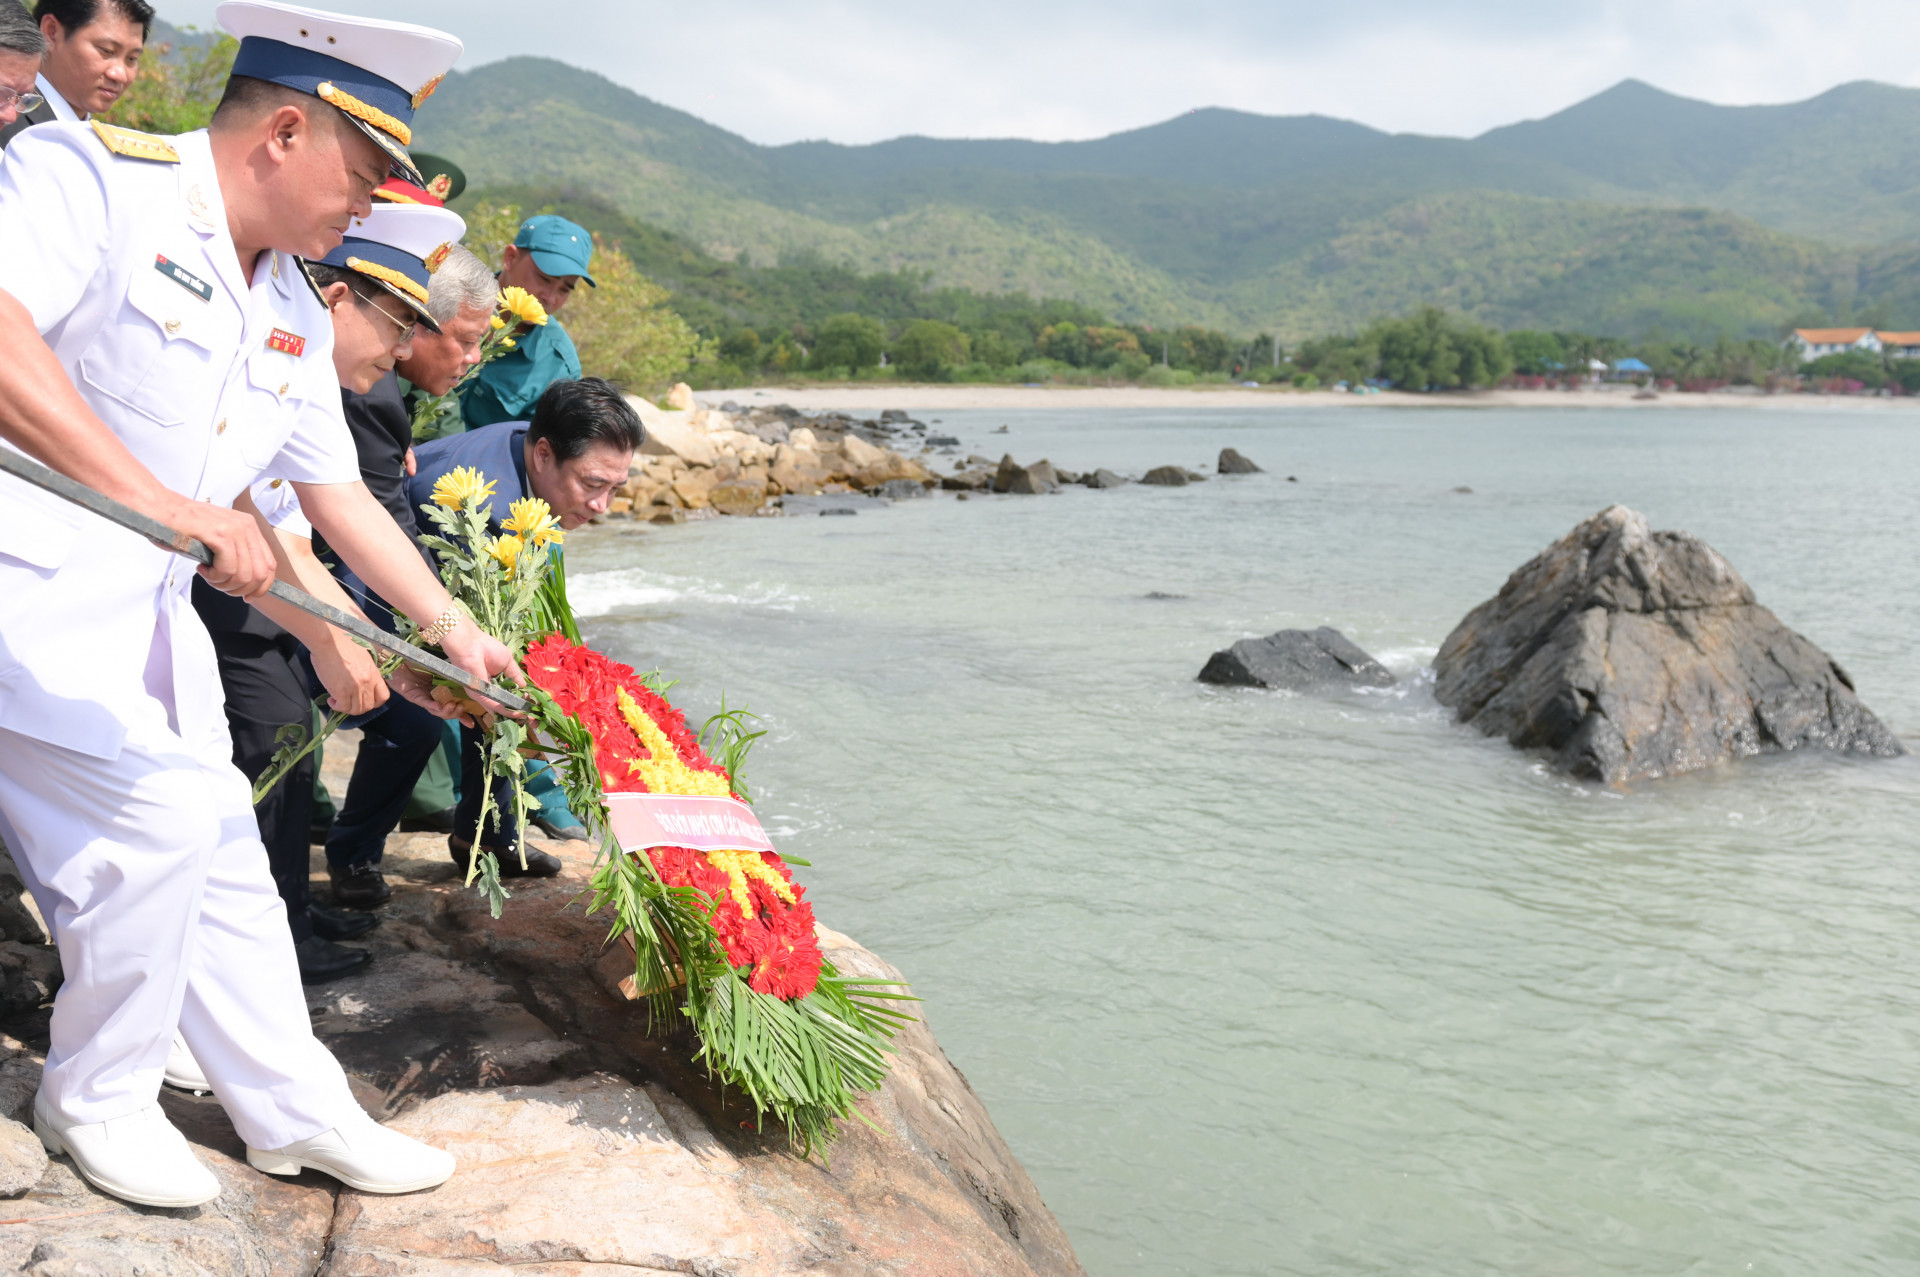 Các đại biểu thực hiện nghi lễ thả vòng hoa xuống biển để tưởng nhớ các anh hùng liệt sĩ.